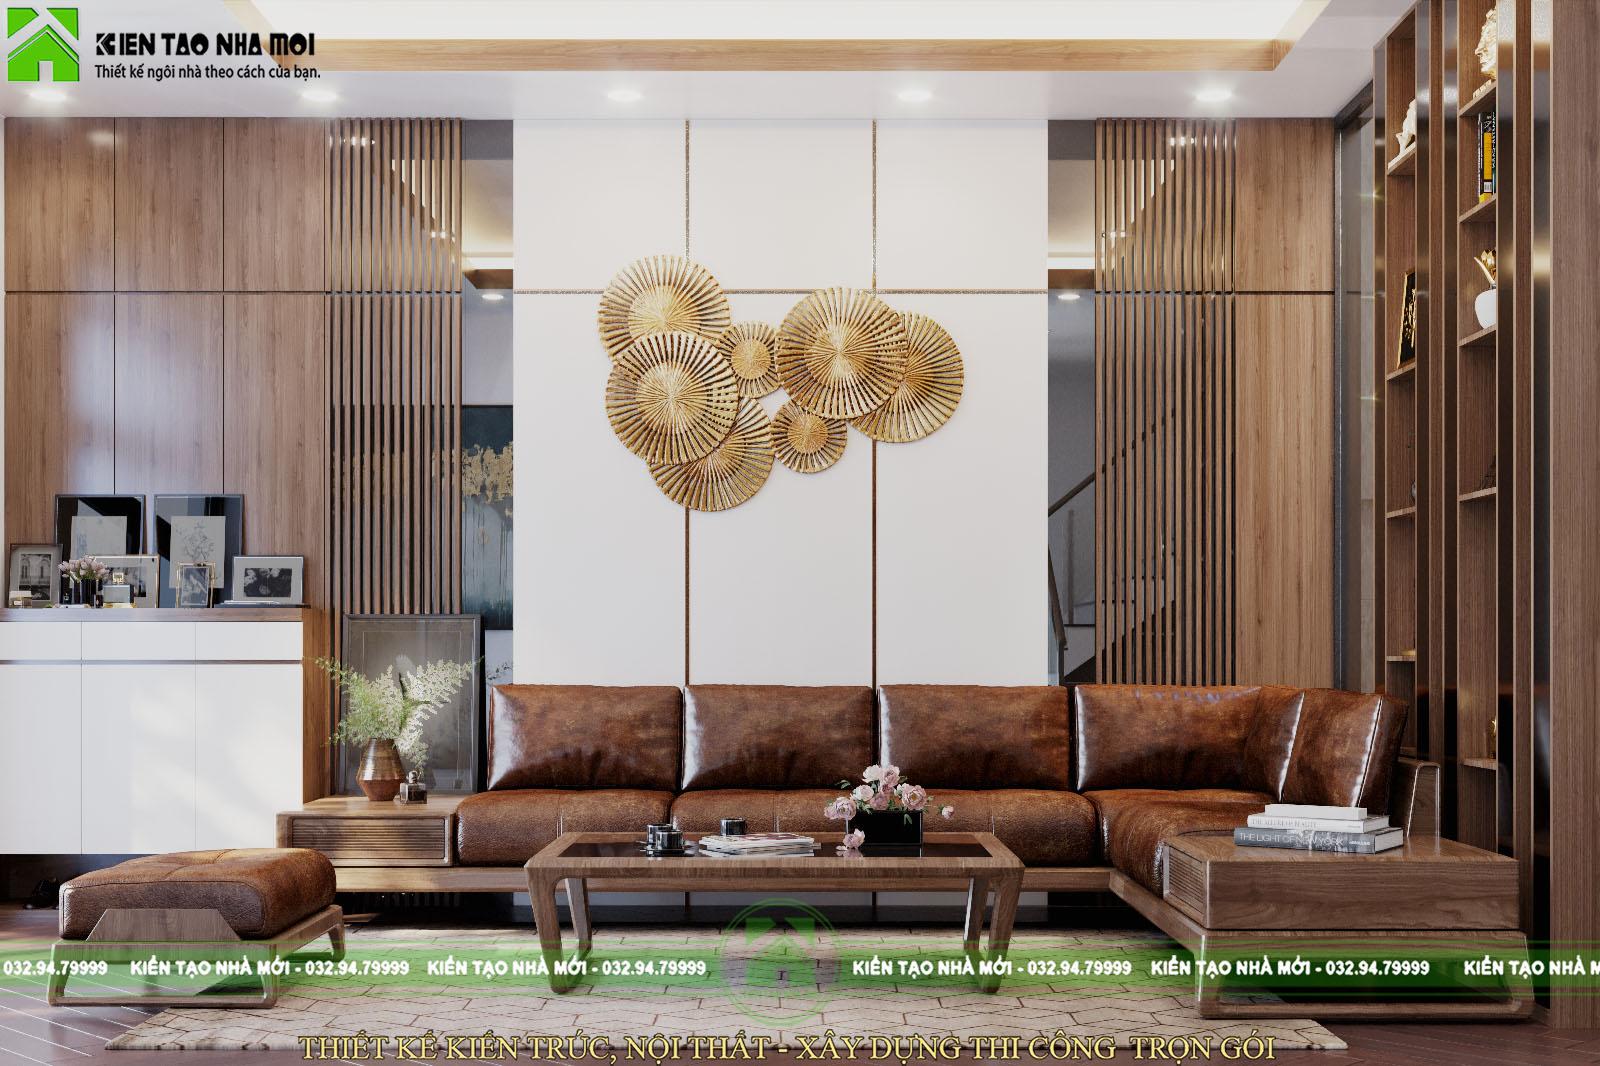 Thiết kế nội thất Biệt Thự tại Phú Thọ Thiết kế nội thất nhà ở đẹp, hiện đại tại Phú Thọ 1588576335 0